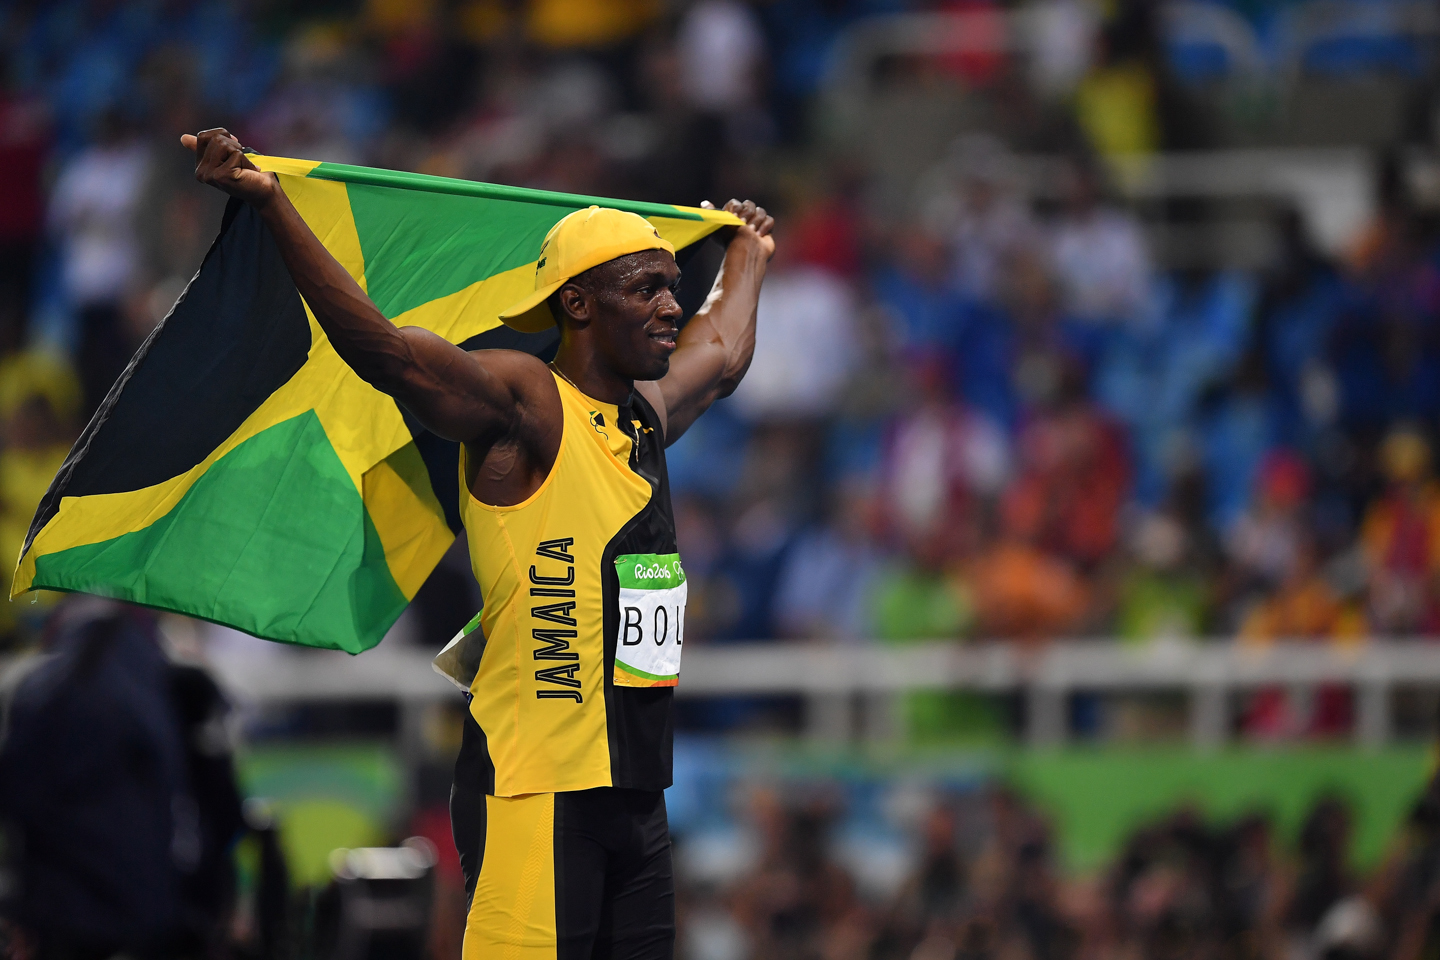 JO, RIO DE JANEIRO, BRÉSIL - 14 AOÛT :  Usain Bolt après avoir gagné l'épreuve du 100 mètres masculin dans le stade olympique. © (Photo by Pascal Le Segretain/Getty Images)